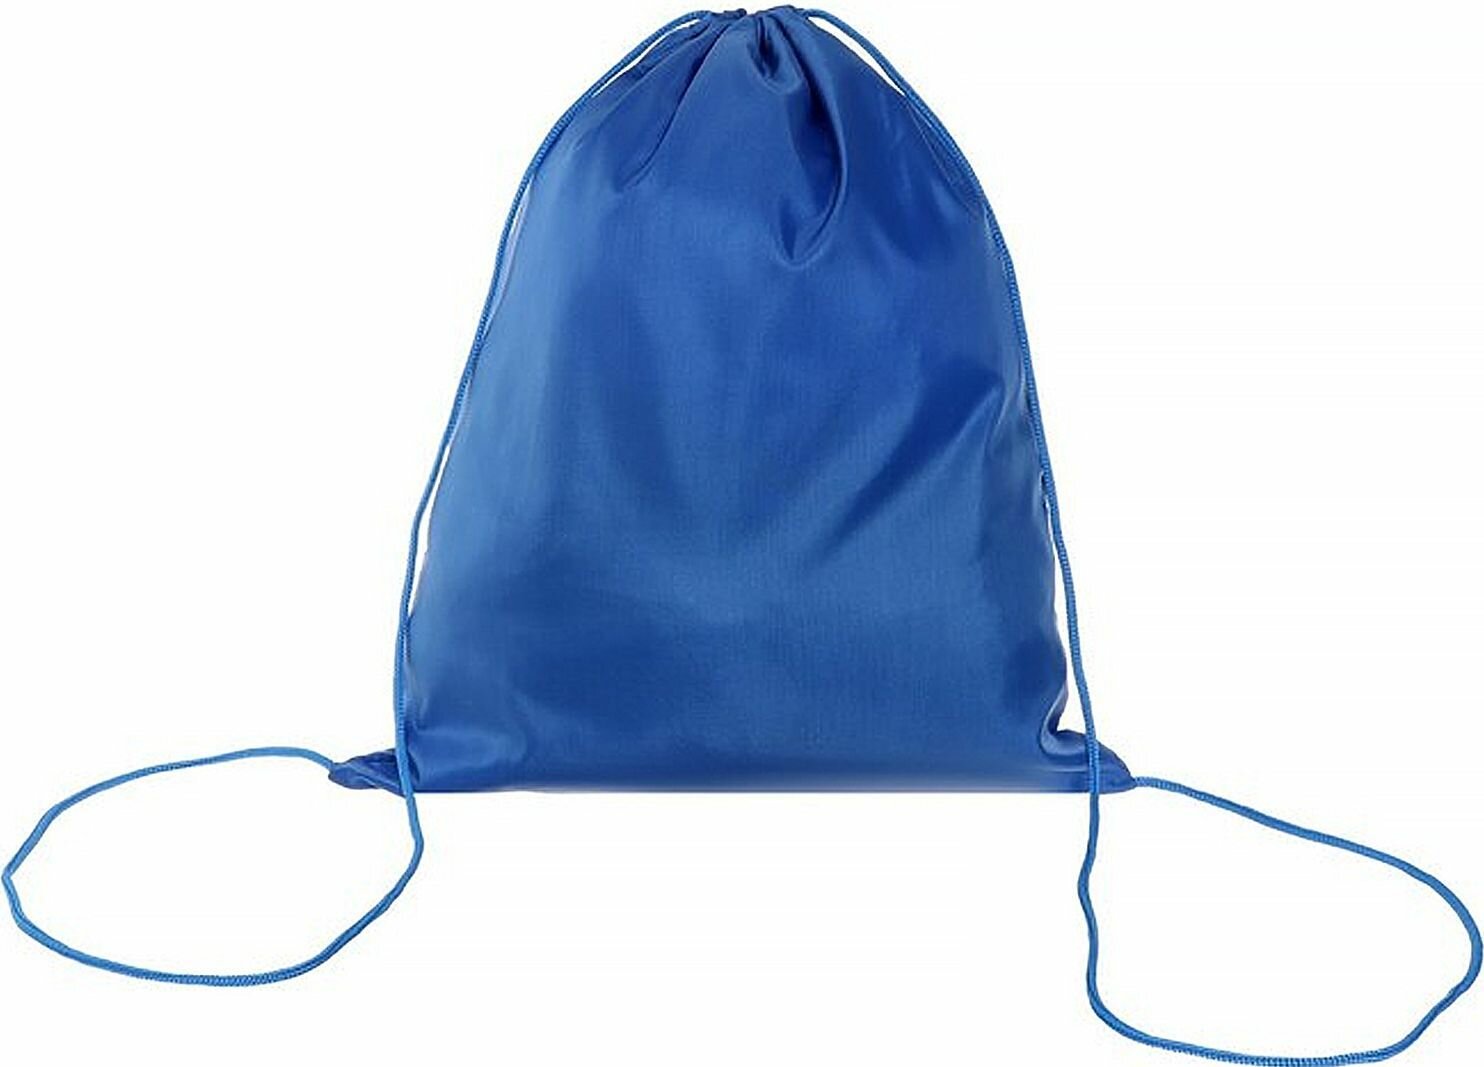 Мешок школьный для сменной обуви и спортивной формы "Стандарт" СДС-1, сумка для сменки, рюкзак для второй обуви и вещей в школу, мягкий полиэстер, плотность 210 D, 420 х 340 мм, синий